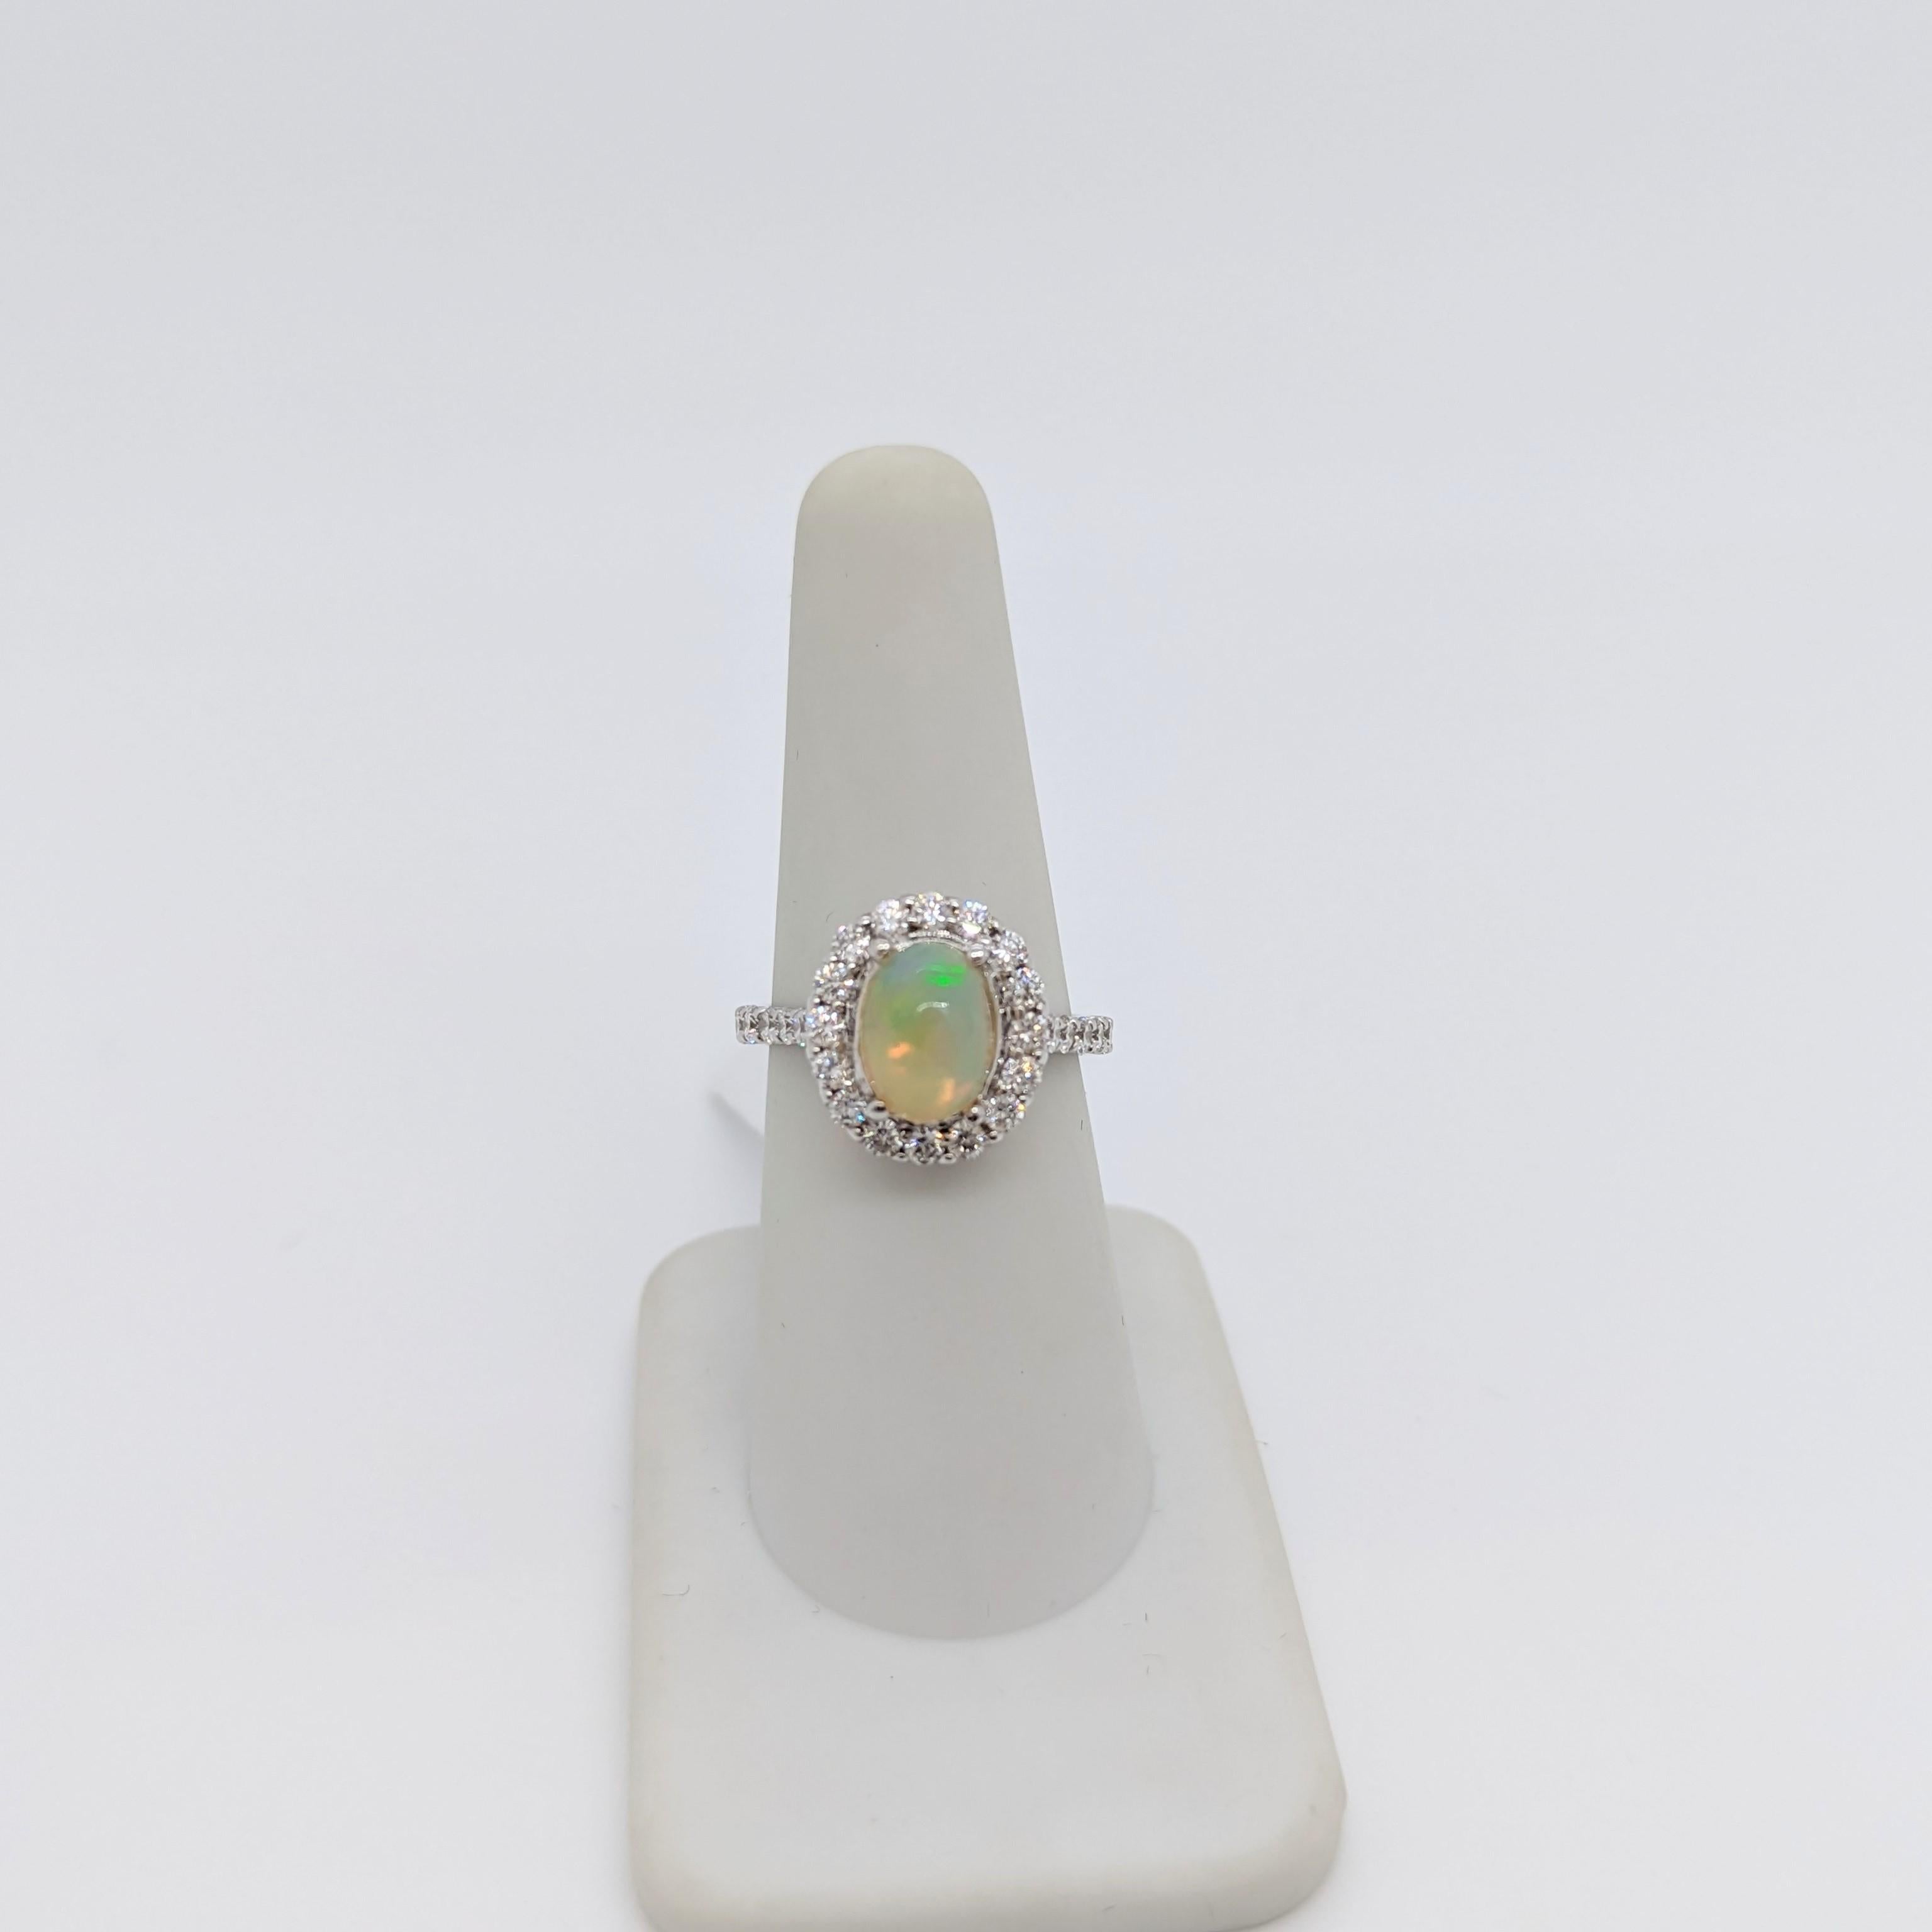 Wunderschöner ovaler Opal-Cabochon von 1,58 ct. mit runden weißen Diamanten von 0,97 ct. guter Qualität.  Handgefertigt aus 14k Weißgold.  Ringgröße 6,75+.